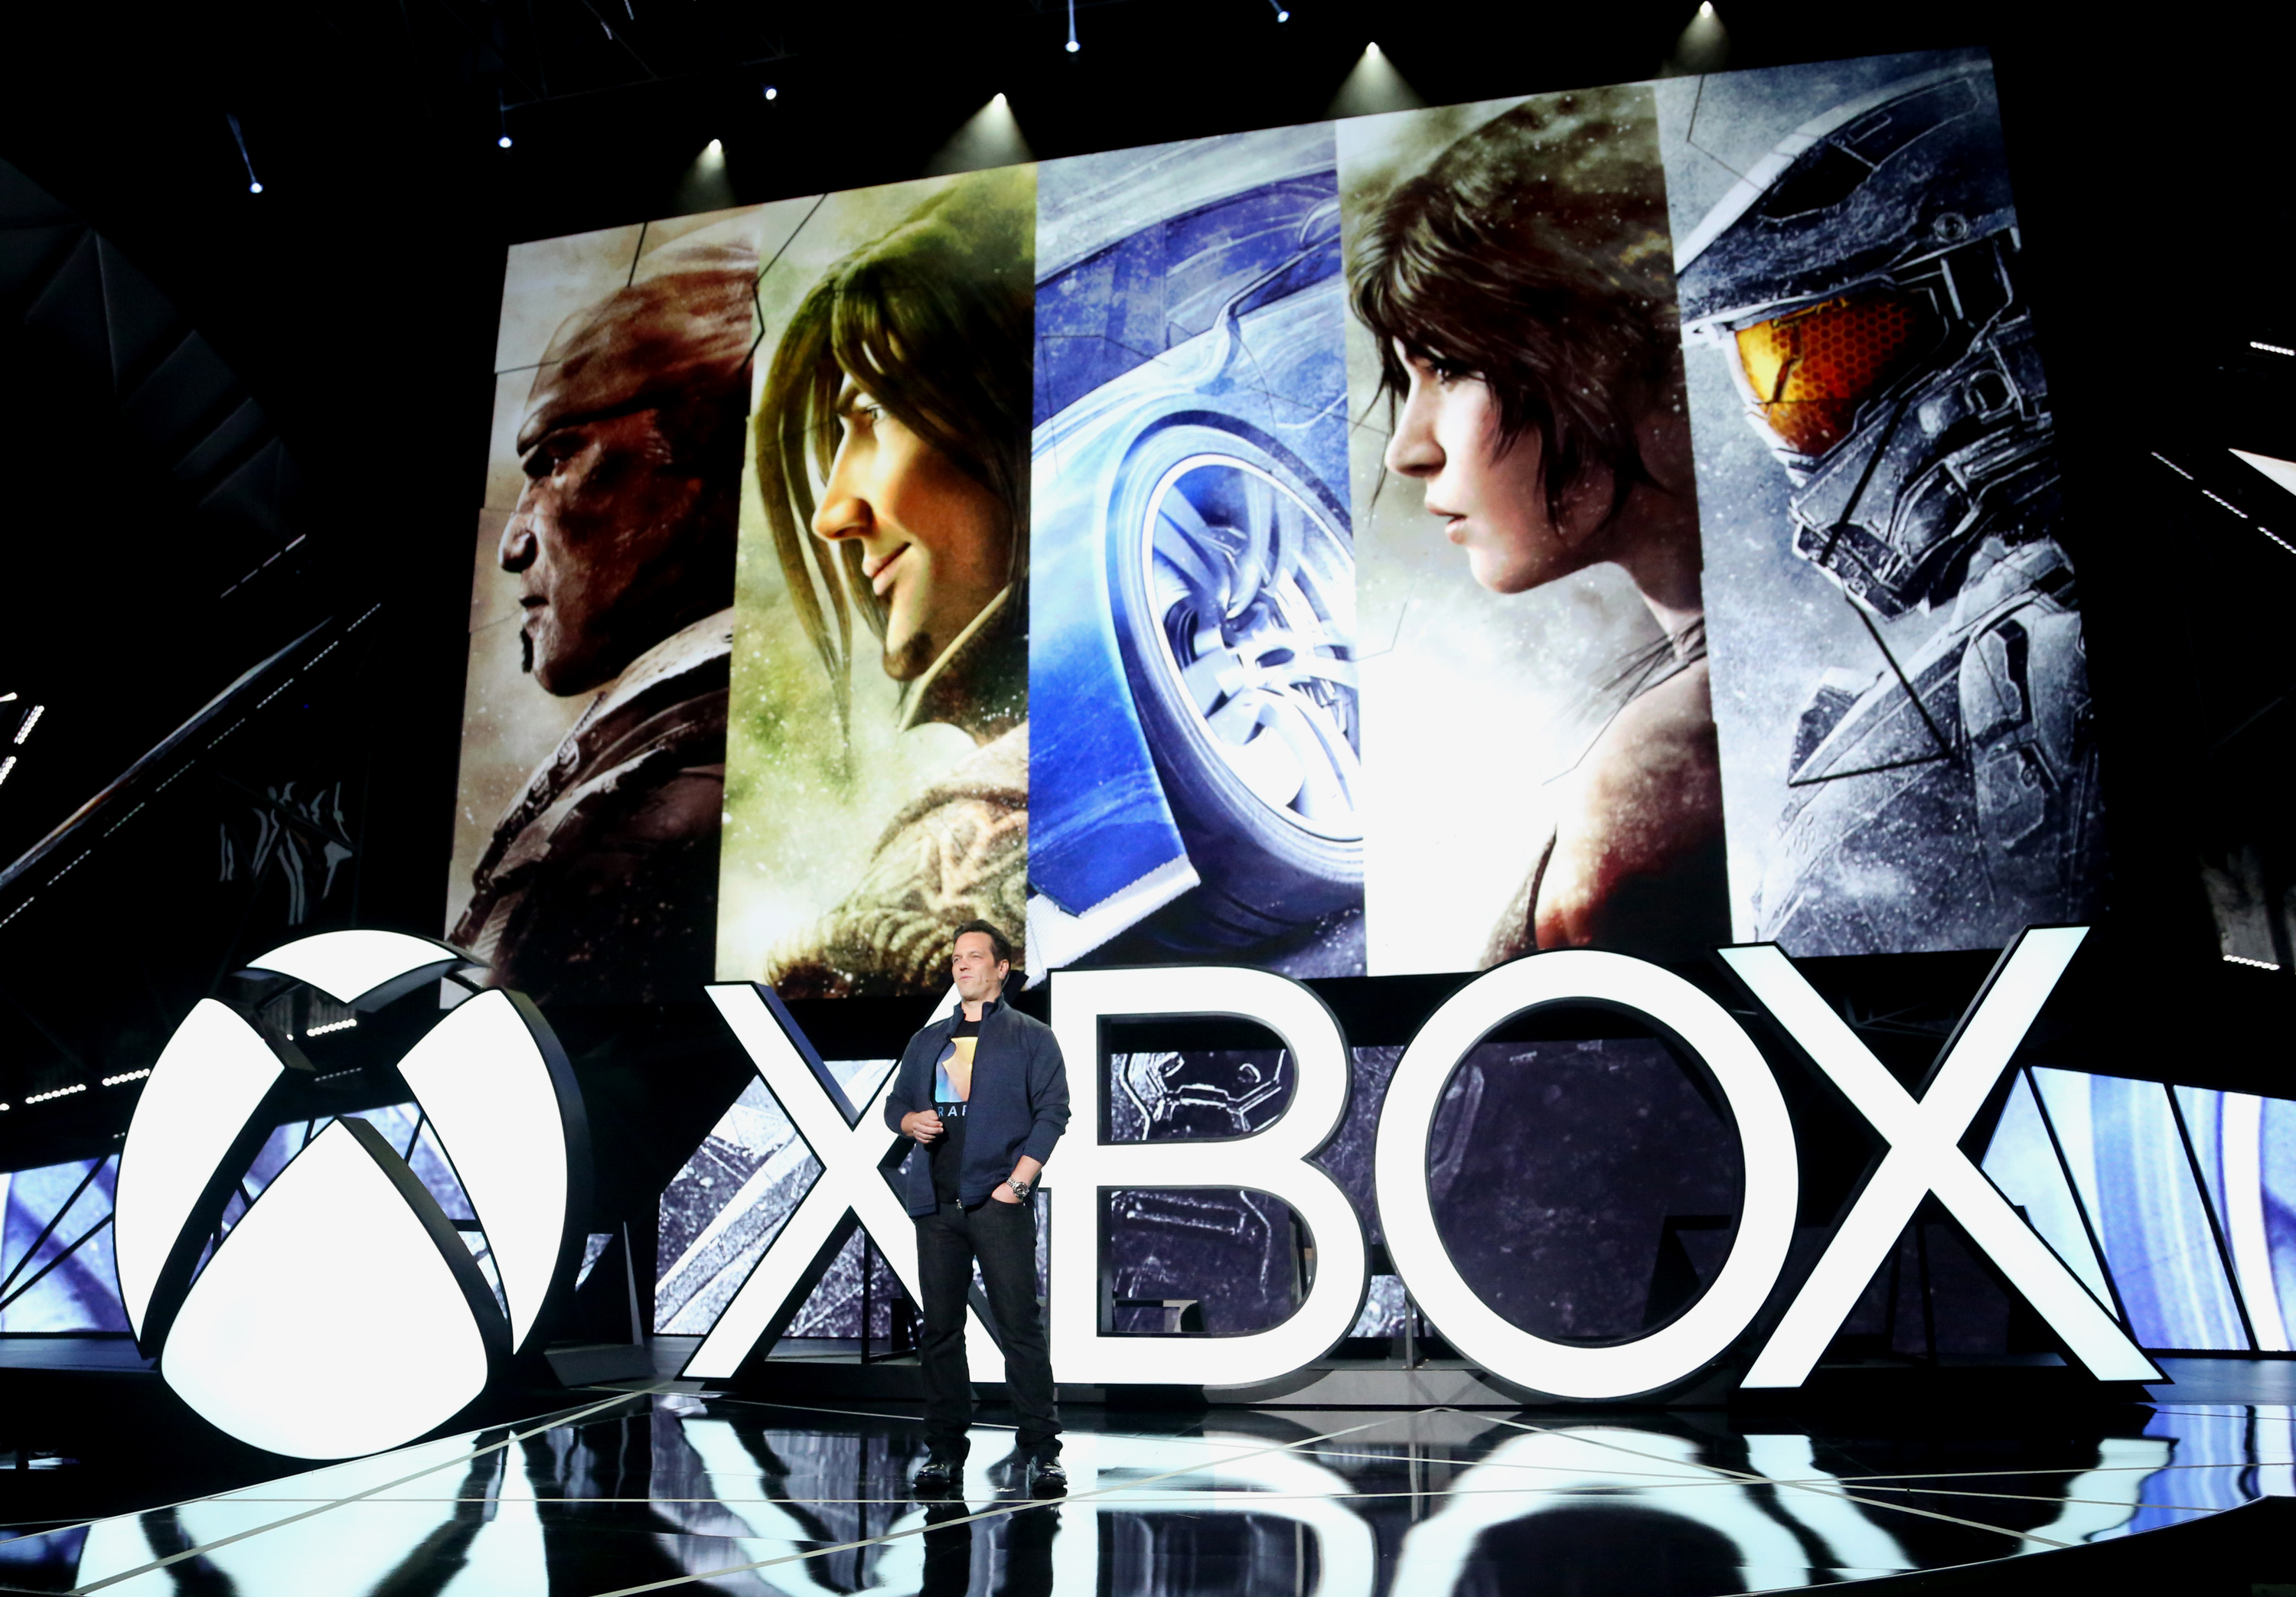 Jogos do Xbox 360 também poderão ser jogados no Windows 10 e Oculus Rift 